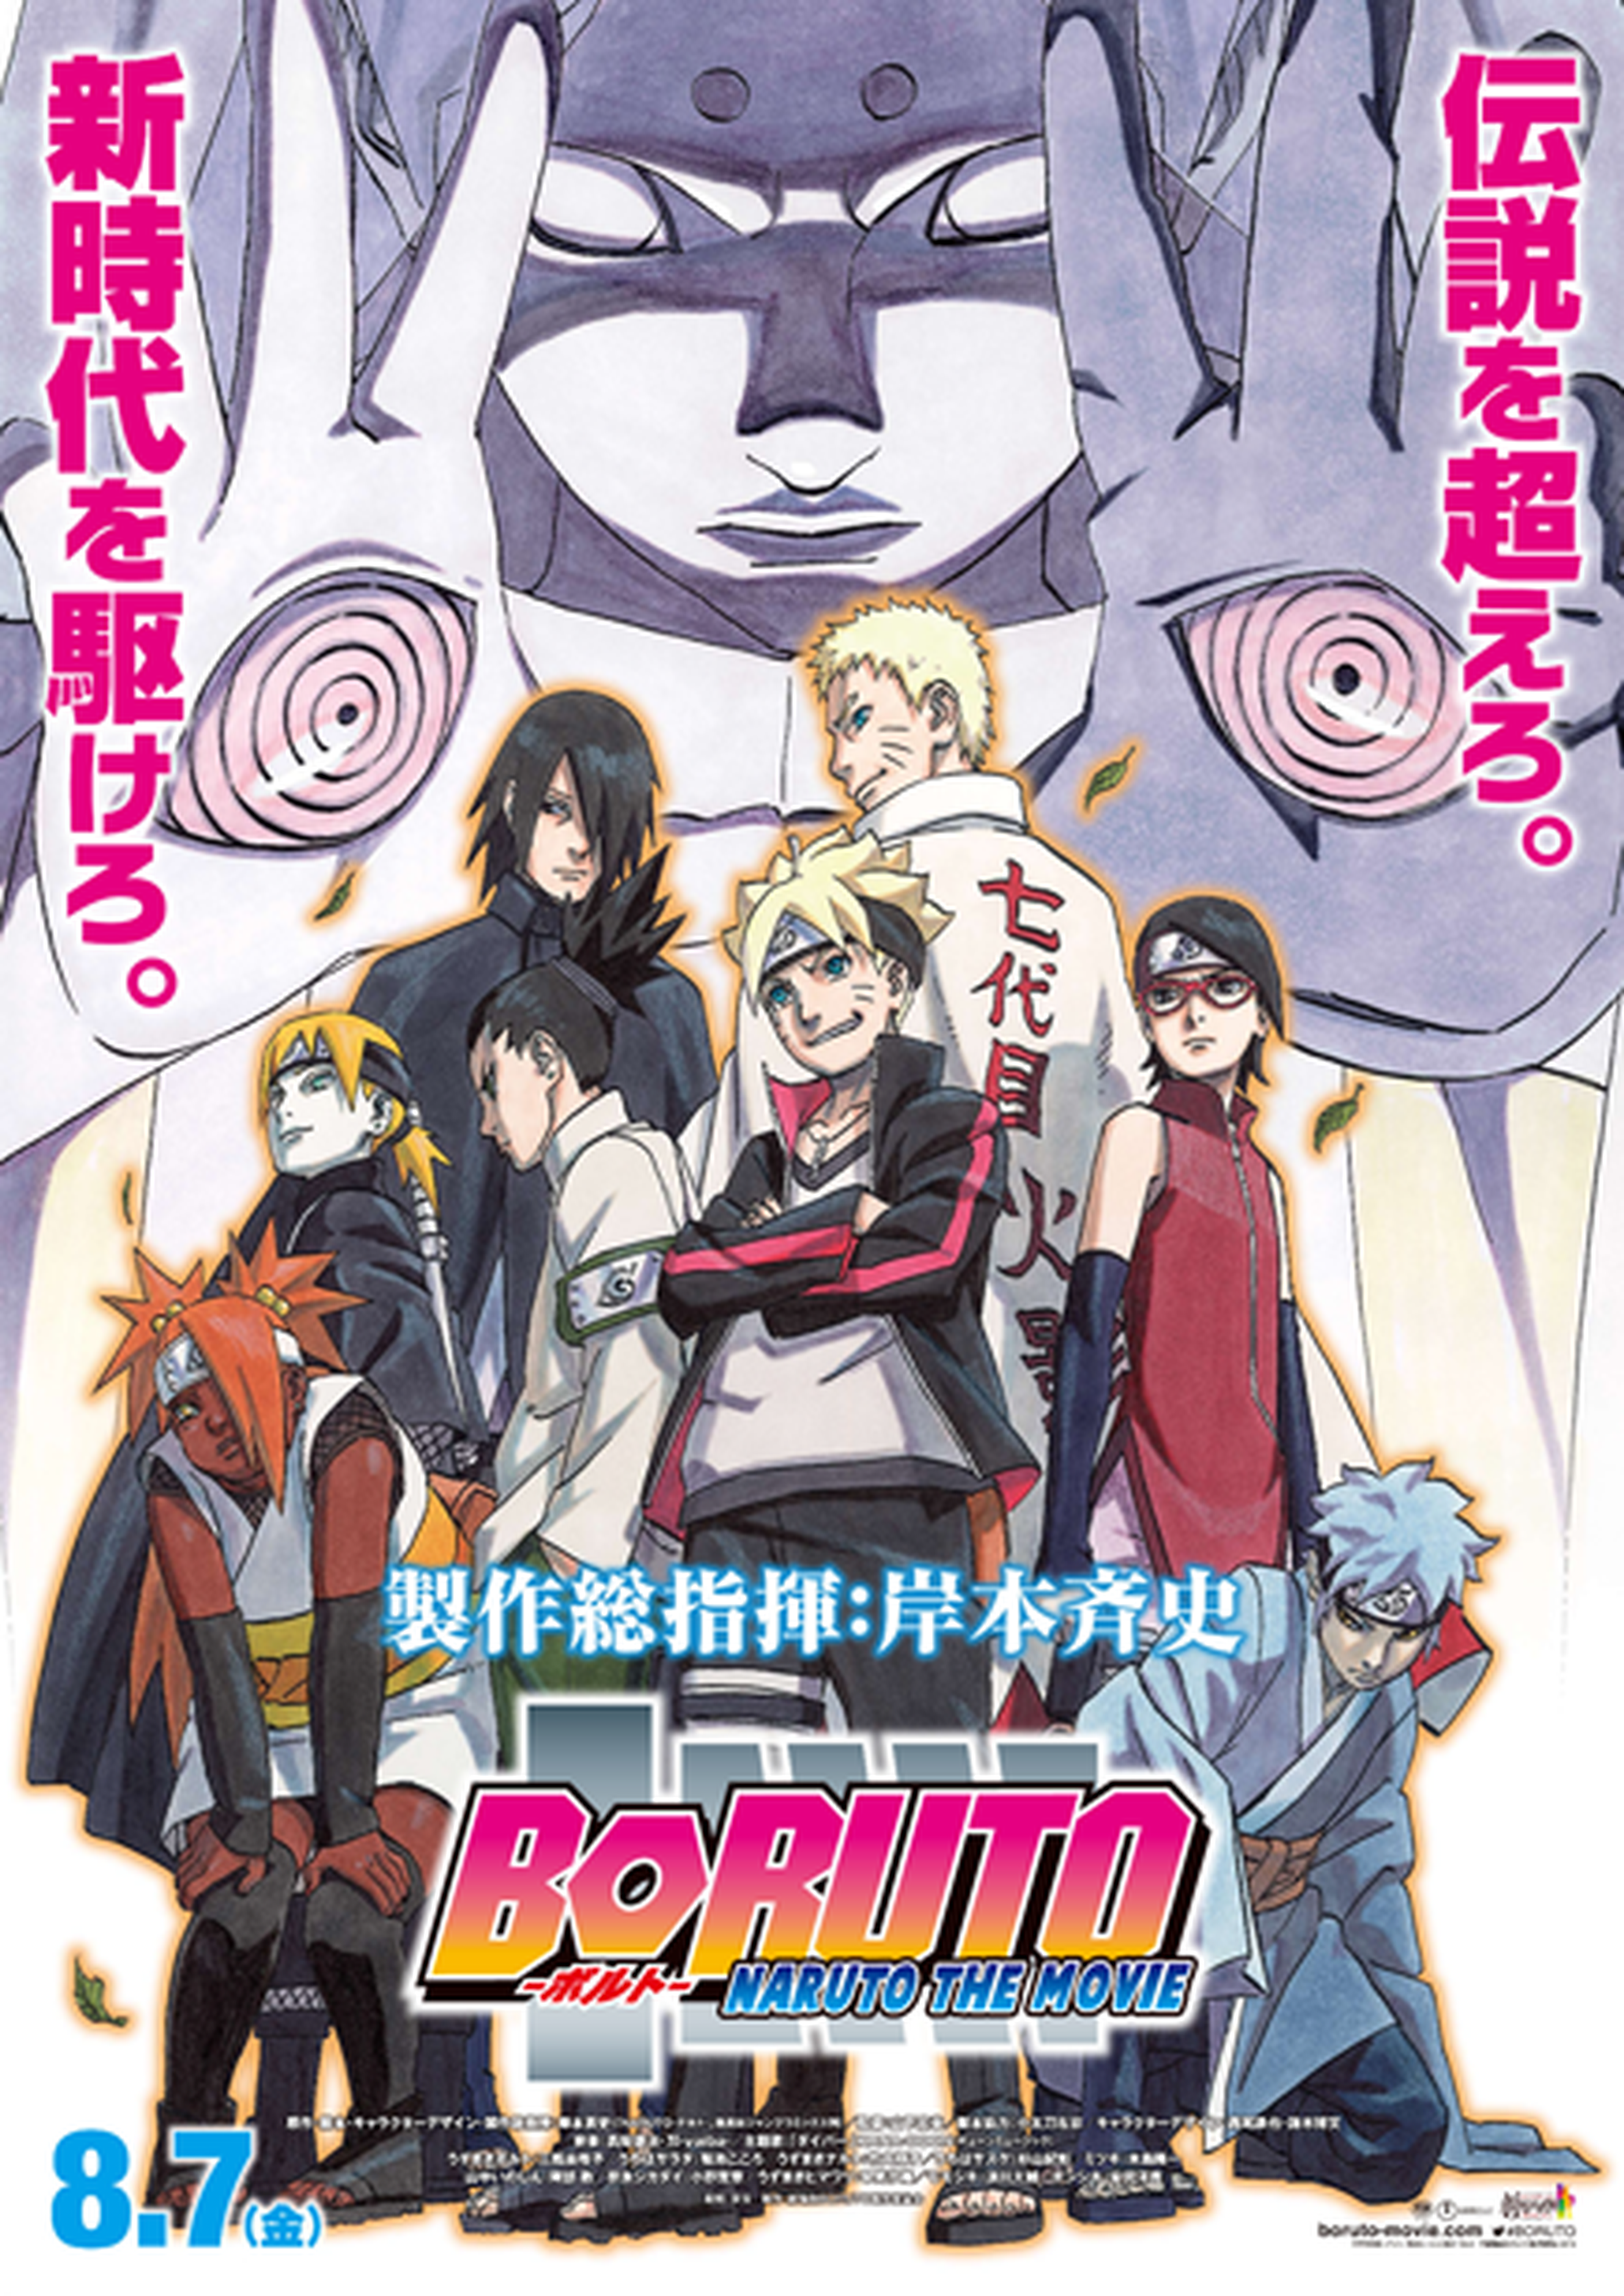 Boruto -Naruto the Movie- ya es la peli más taquillera de Naruto